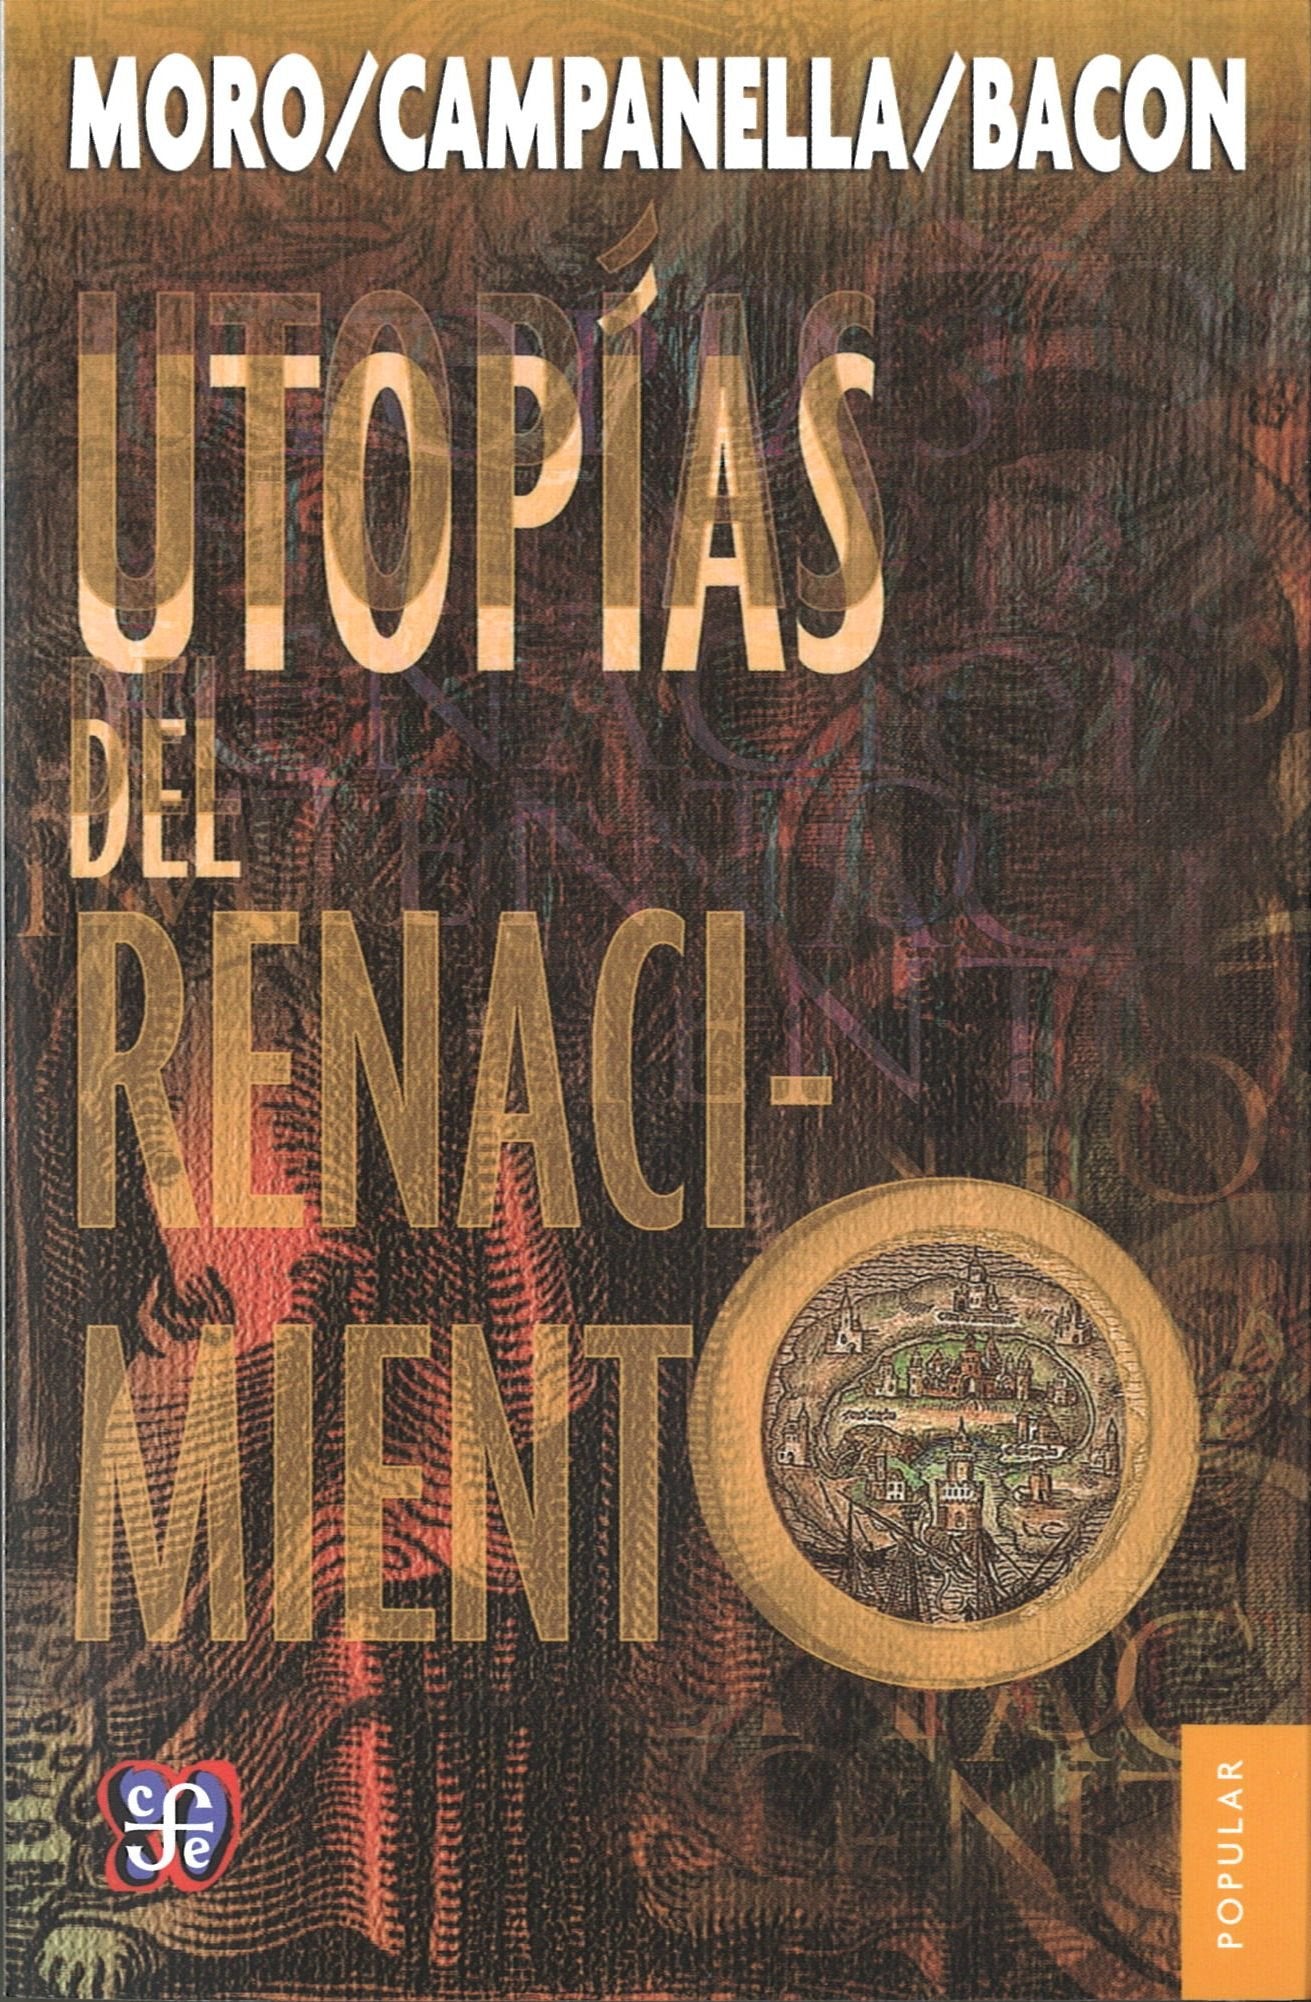 Utopías del renacimiento - Moro, Campanella y Bacon